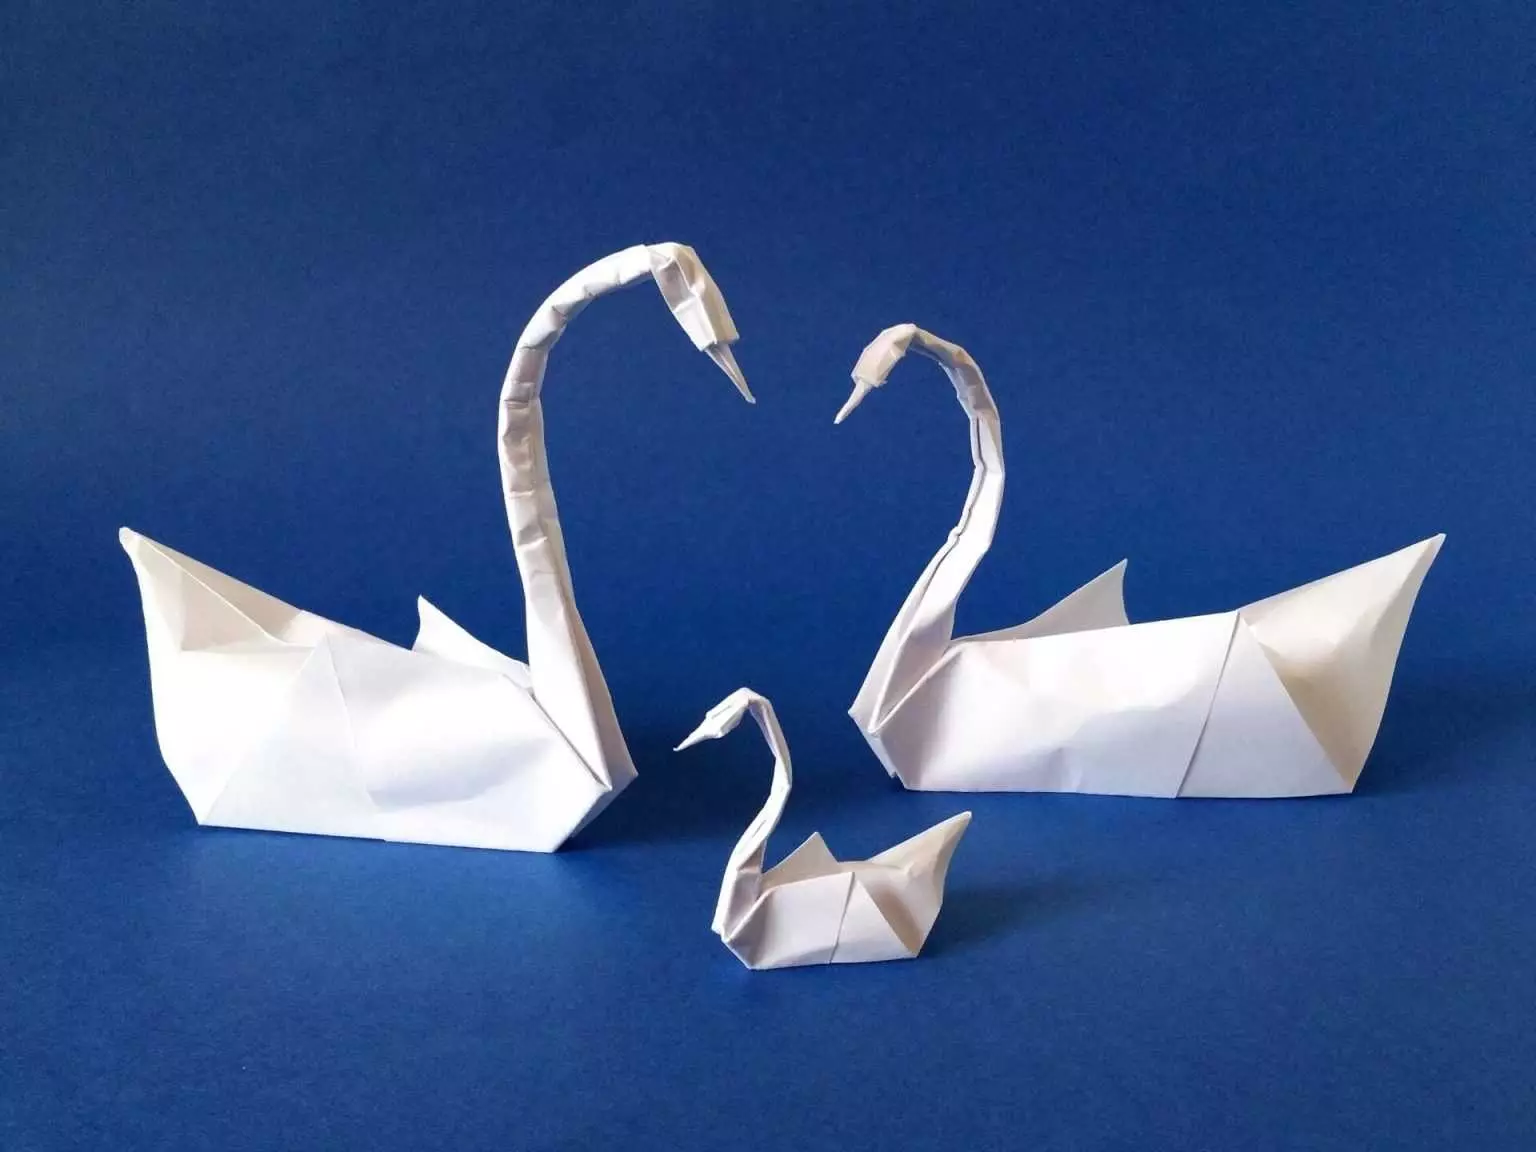 ប្រវត្តិដើម Origami: ការលេចចេញនៃ Origami ម៉ូឌុល។ តើអ្នកណាបានបង្កើតហើយនៅក្នុងឆ្នាំណា? ក្រដាស Origami សម្រាប់កុមារនៅក្នុងពិភពទំនើប 27025_9